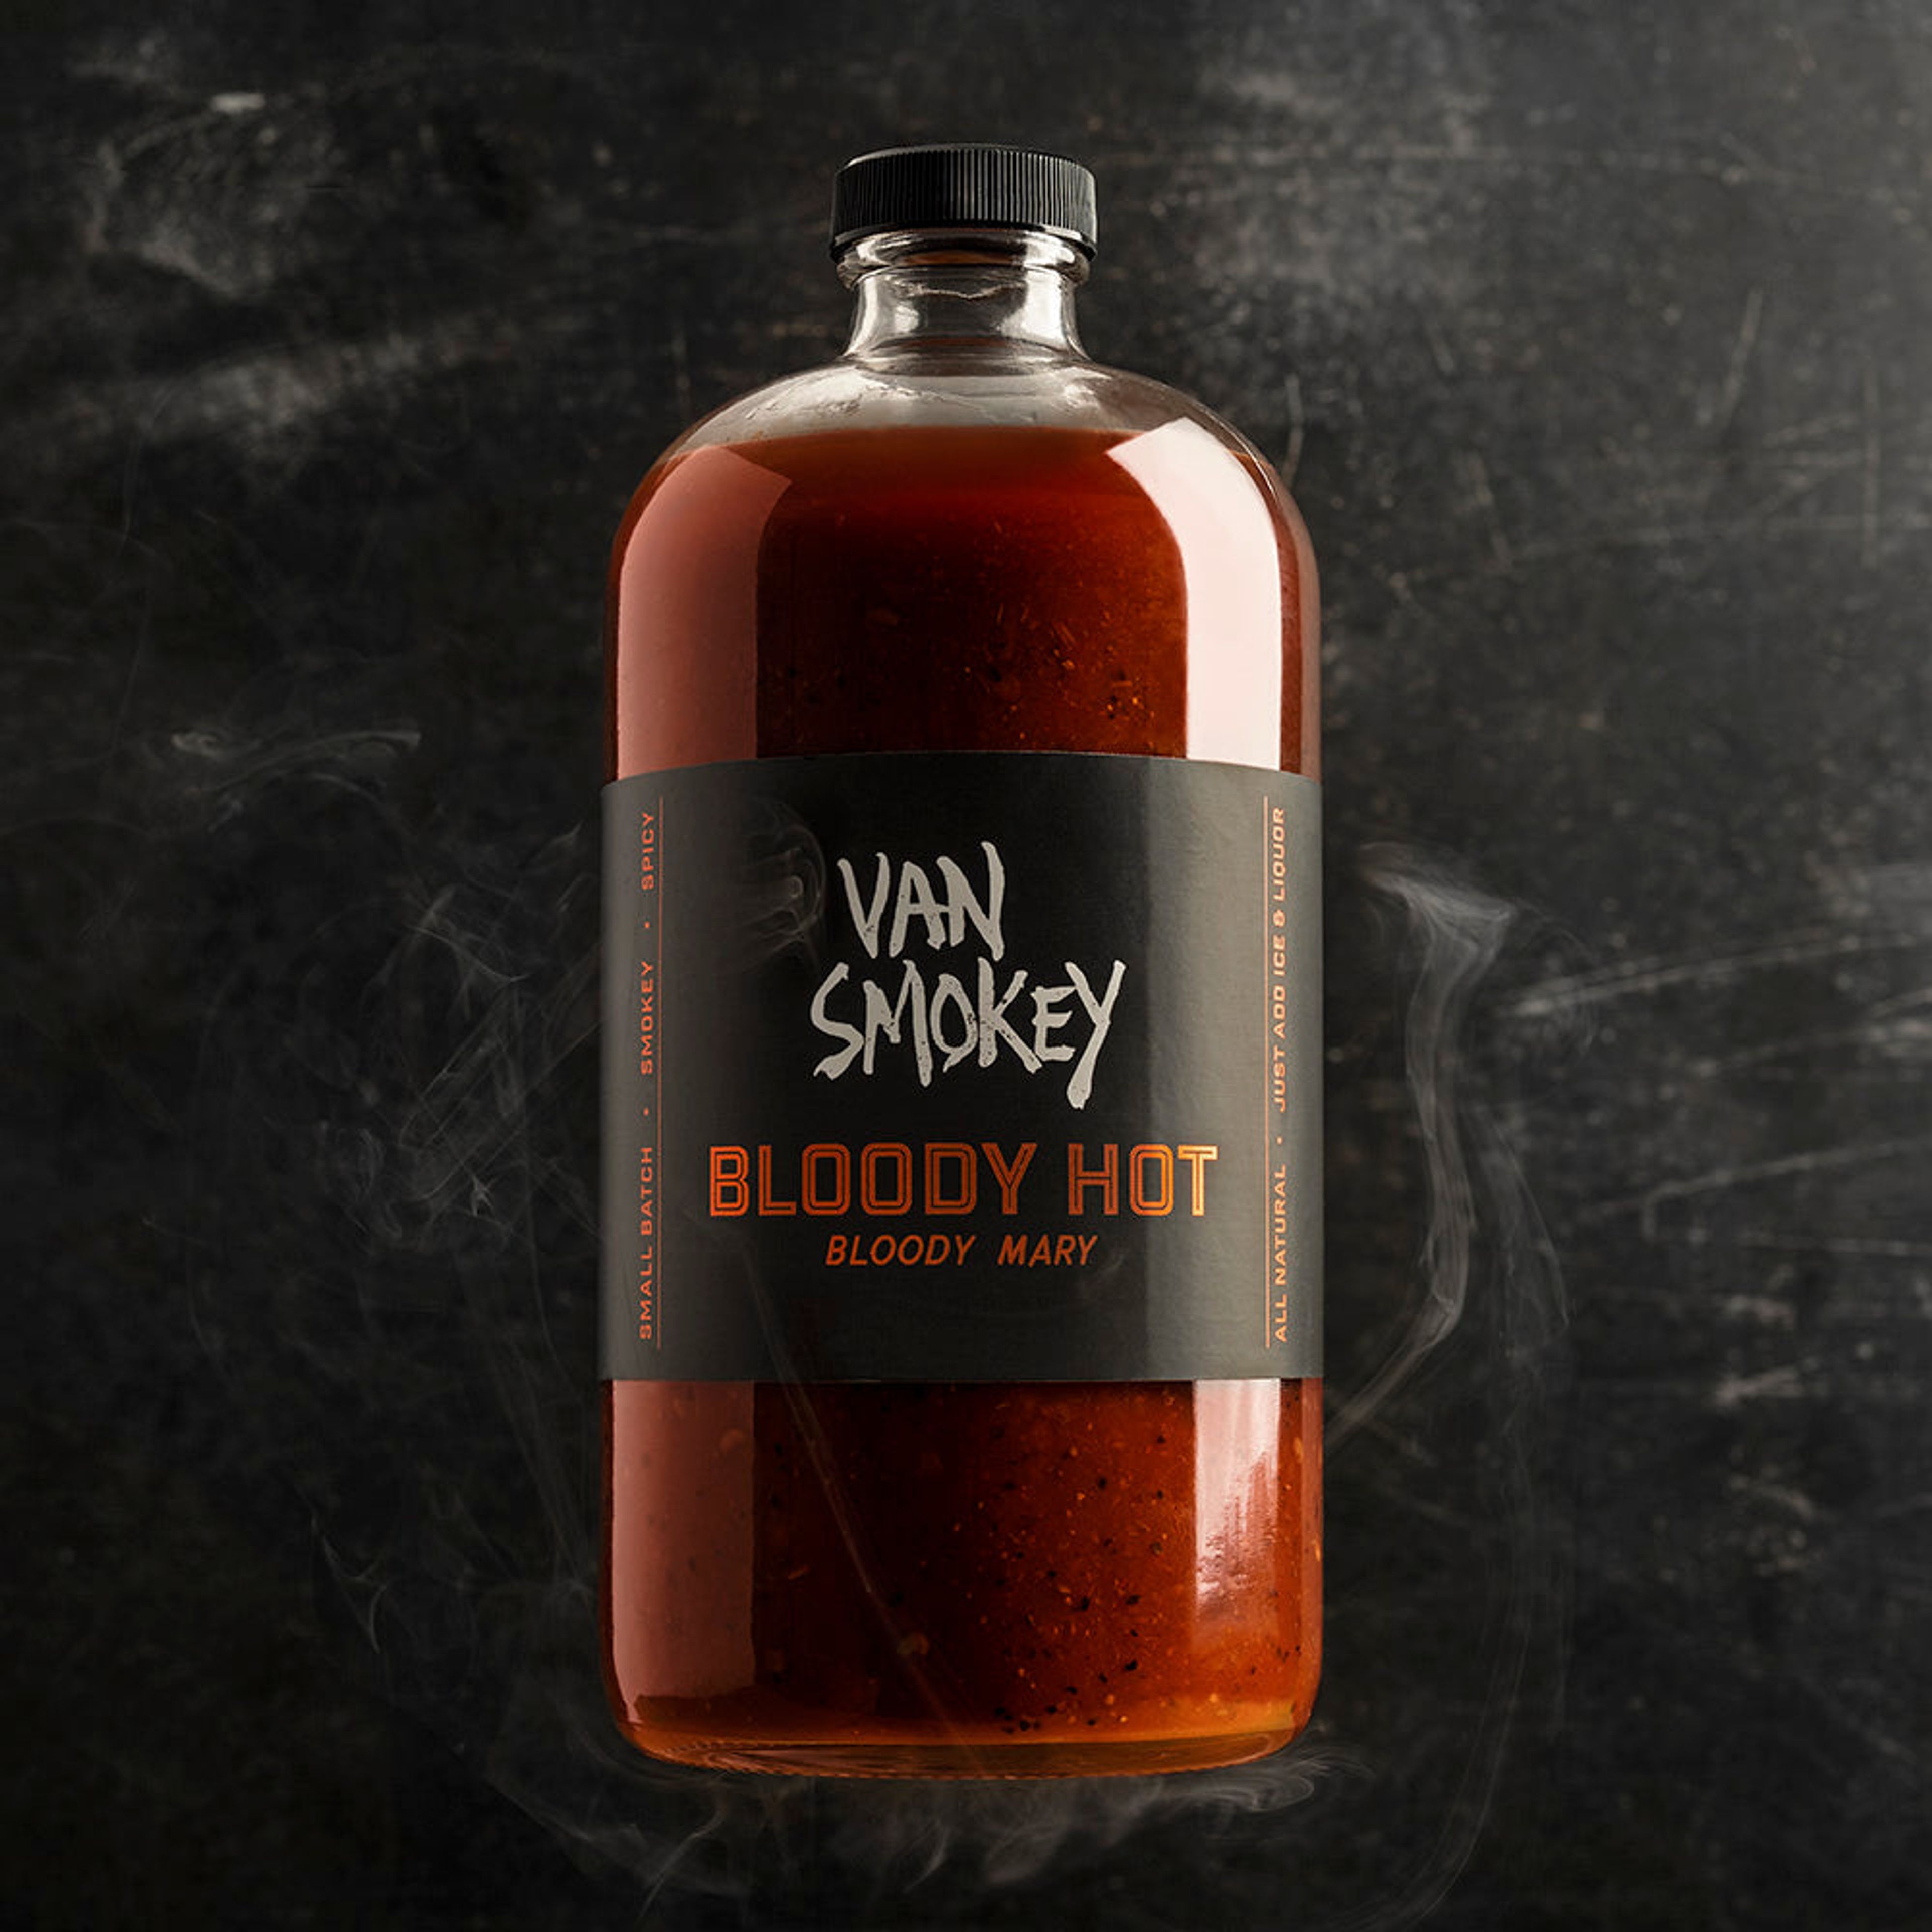 Van Smokey Bloody Hot Bloody Mary